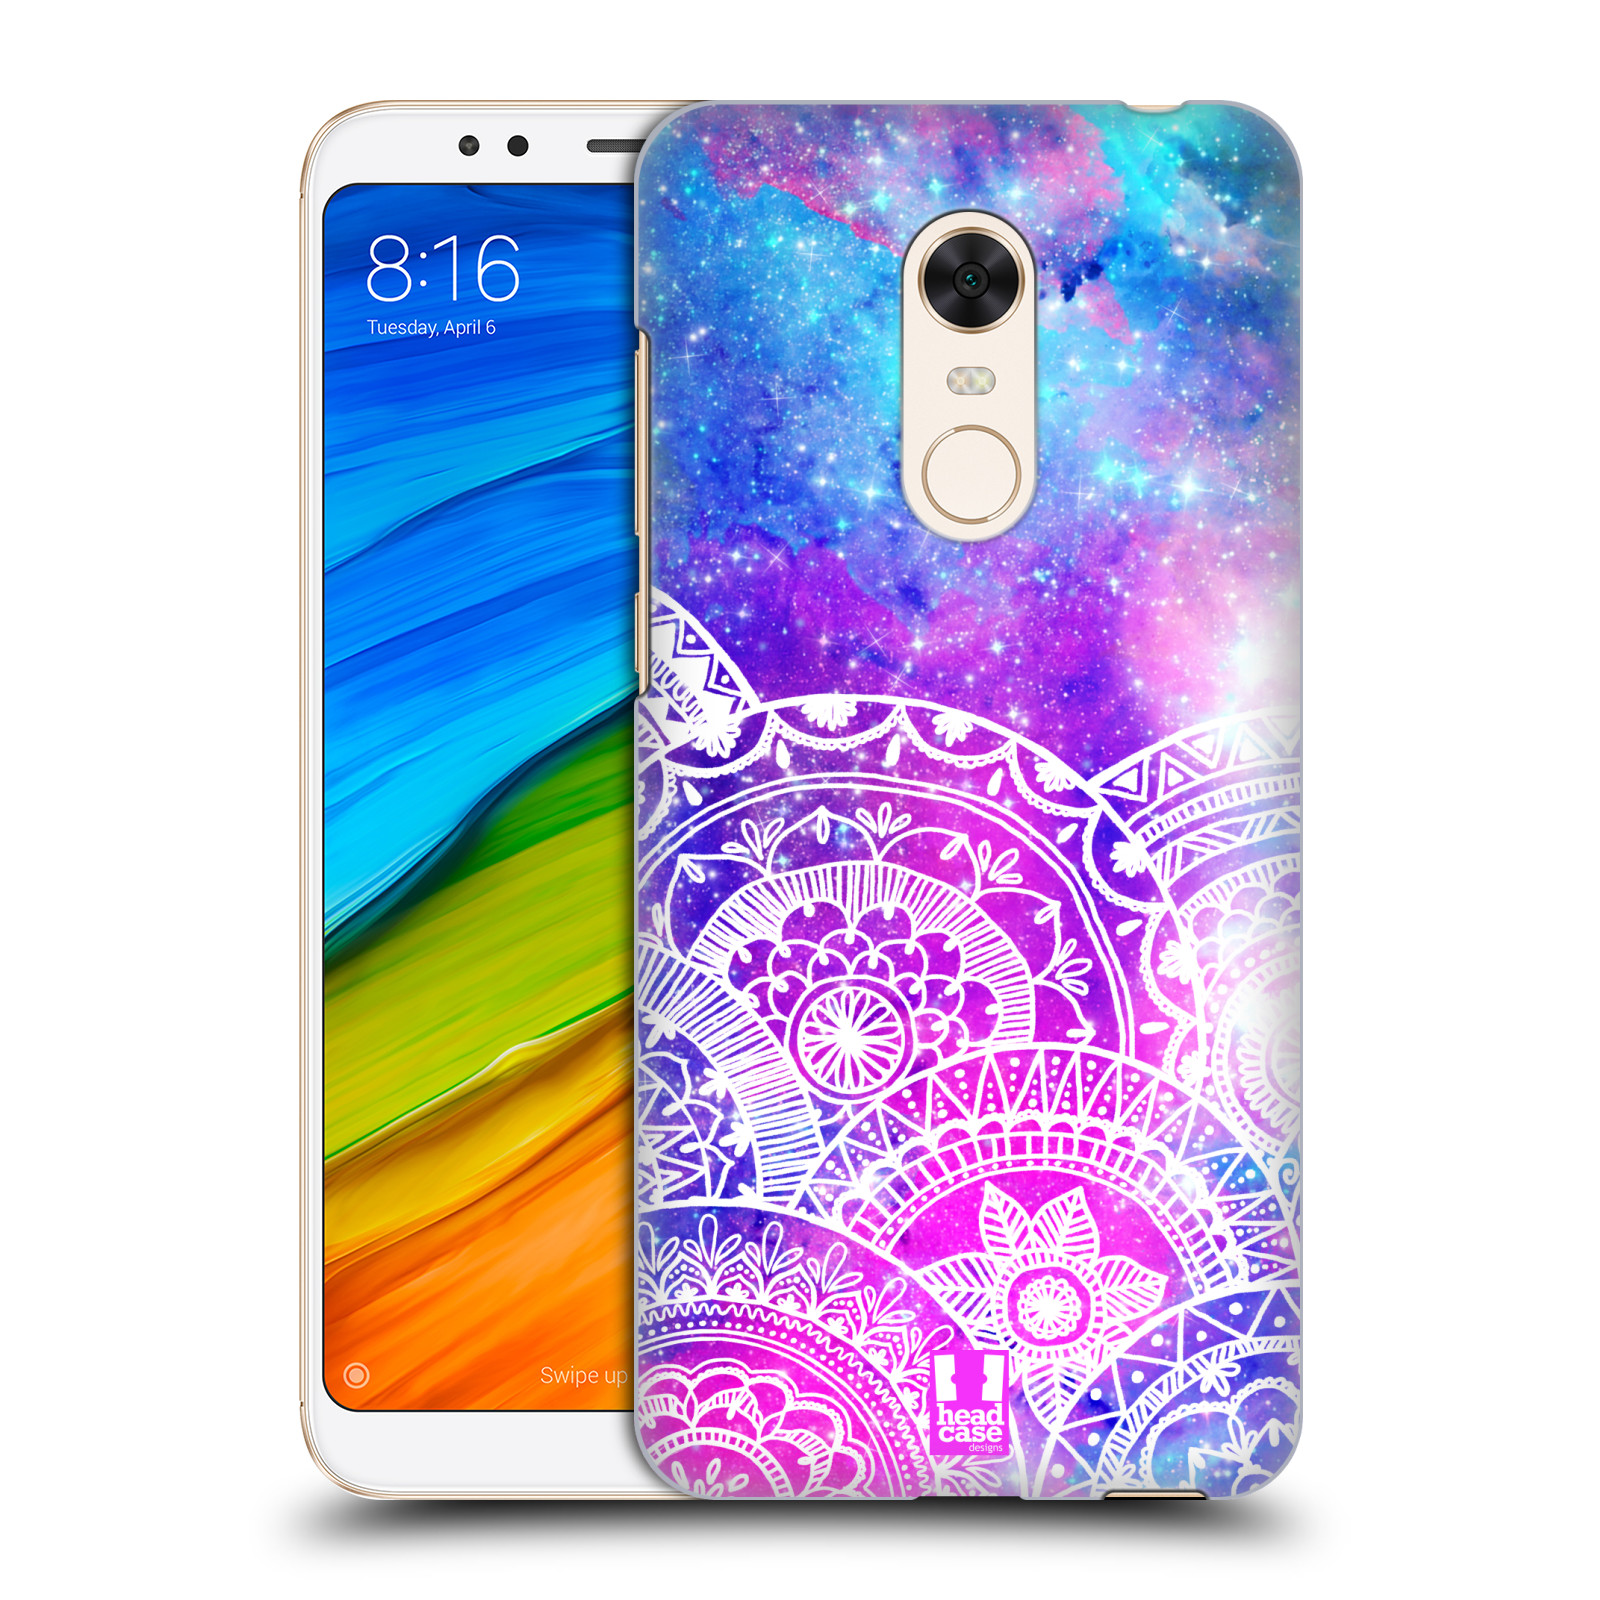 Pouzdro na mobil Xiaomi Redmi 5 PLUS (REDMI 5+) - HEAD CASE - Mandala nekonečná galaxie